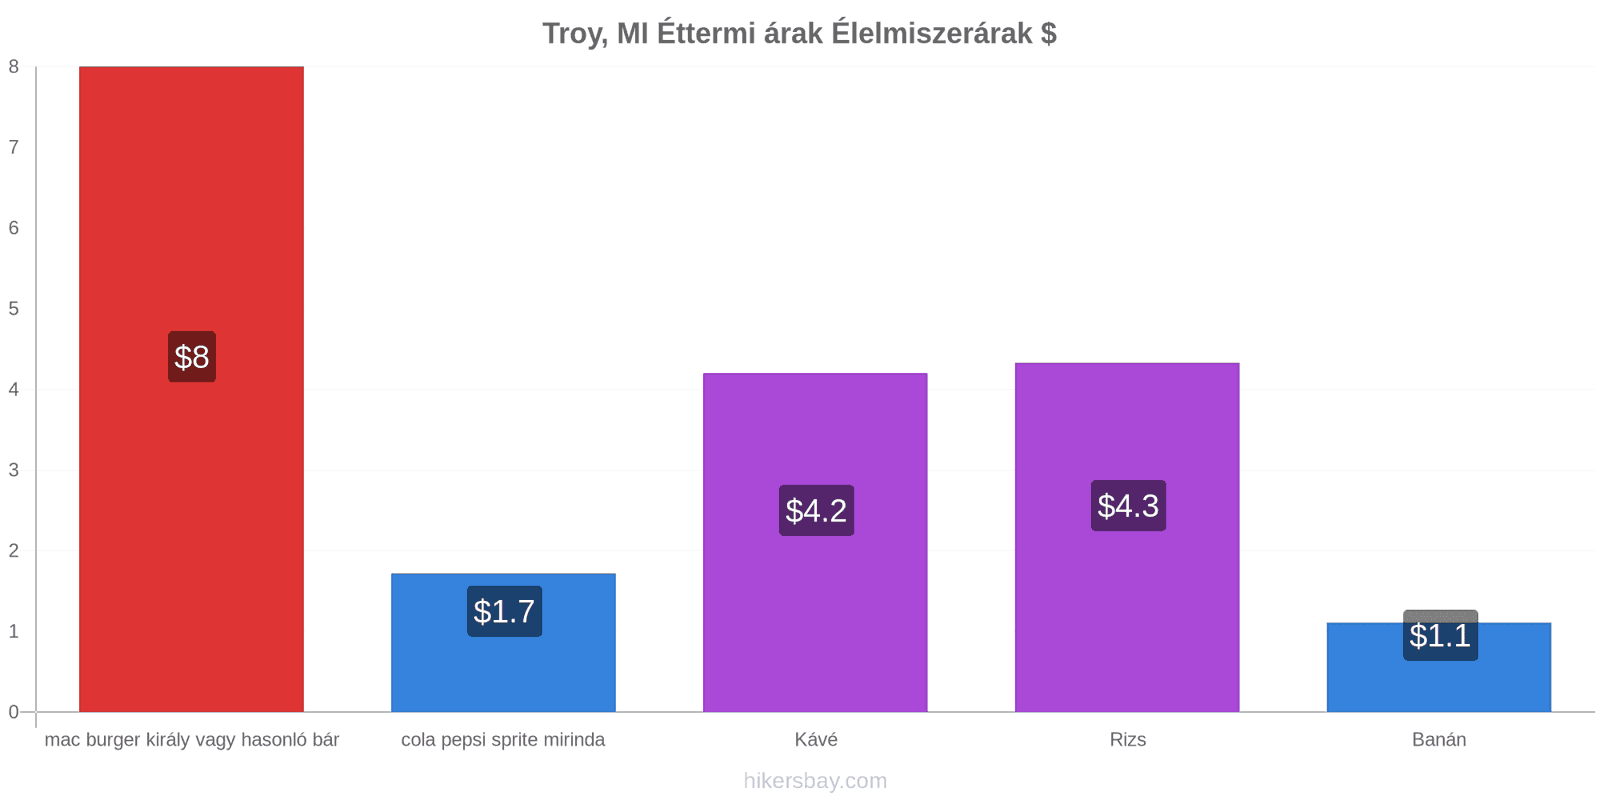 Troy, MI ár változások hikersbay.com